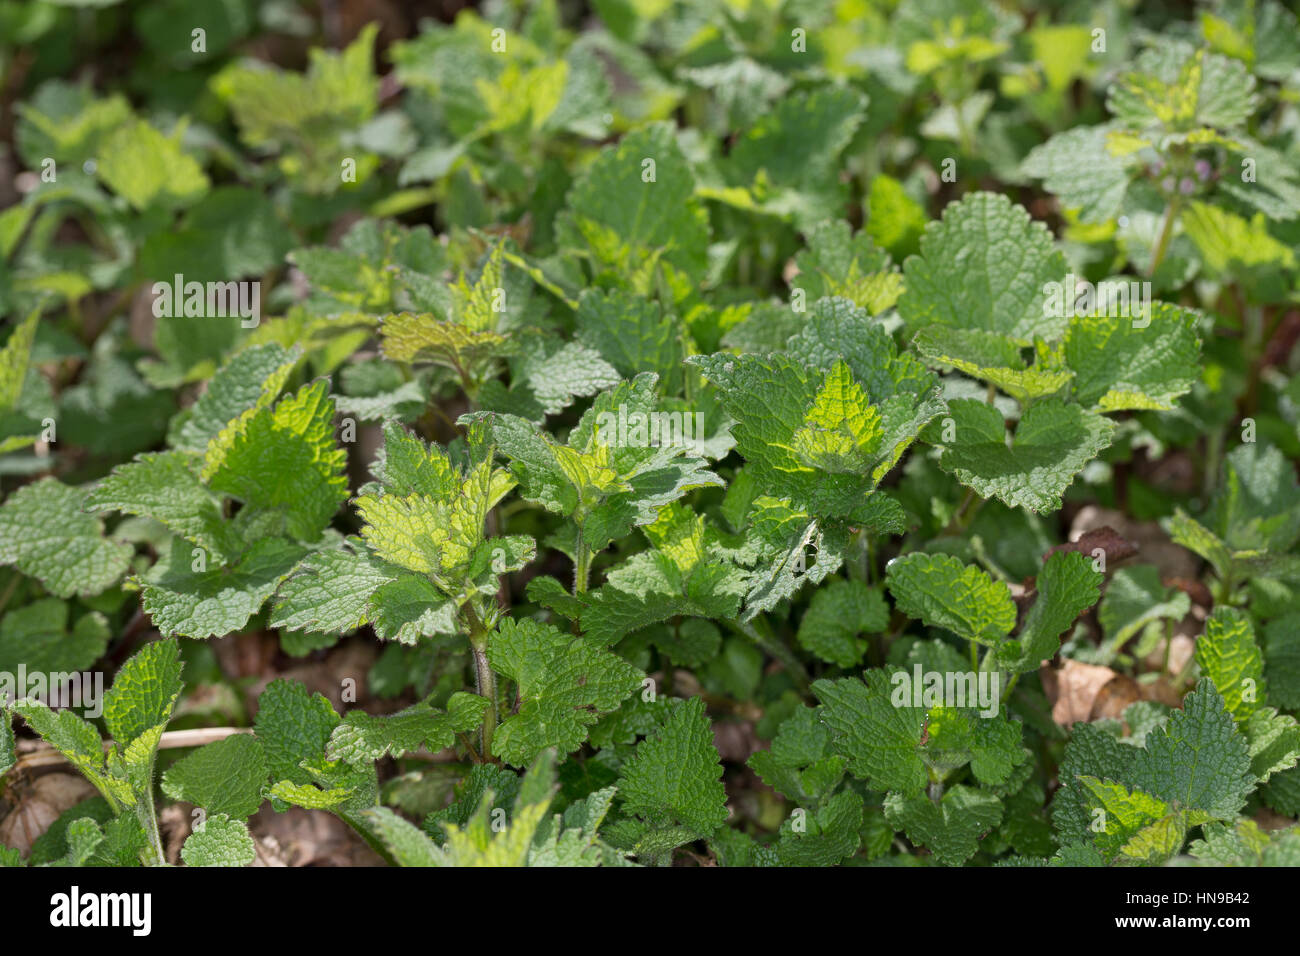 Gefleckte Taubnessel, Blatt, Blätter vor der Blüte, Lamium maculatum, Spotted Dead Nettle Stock Photo